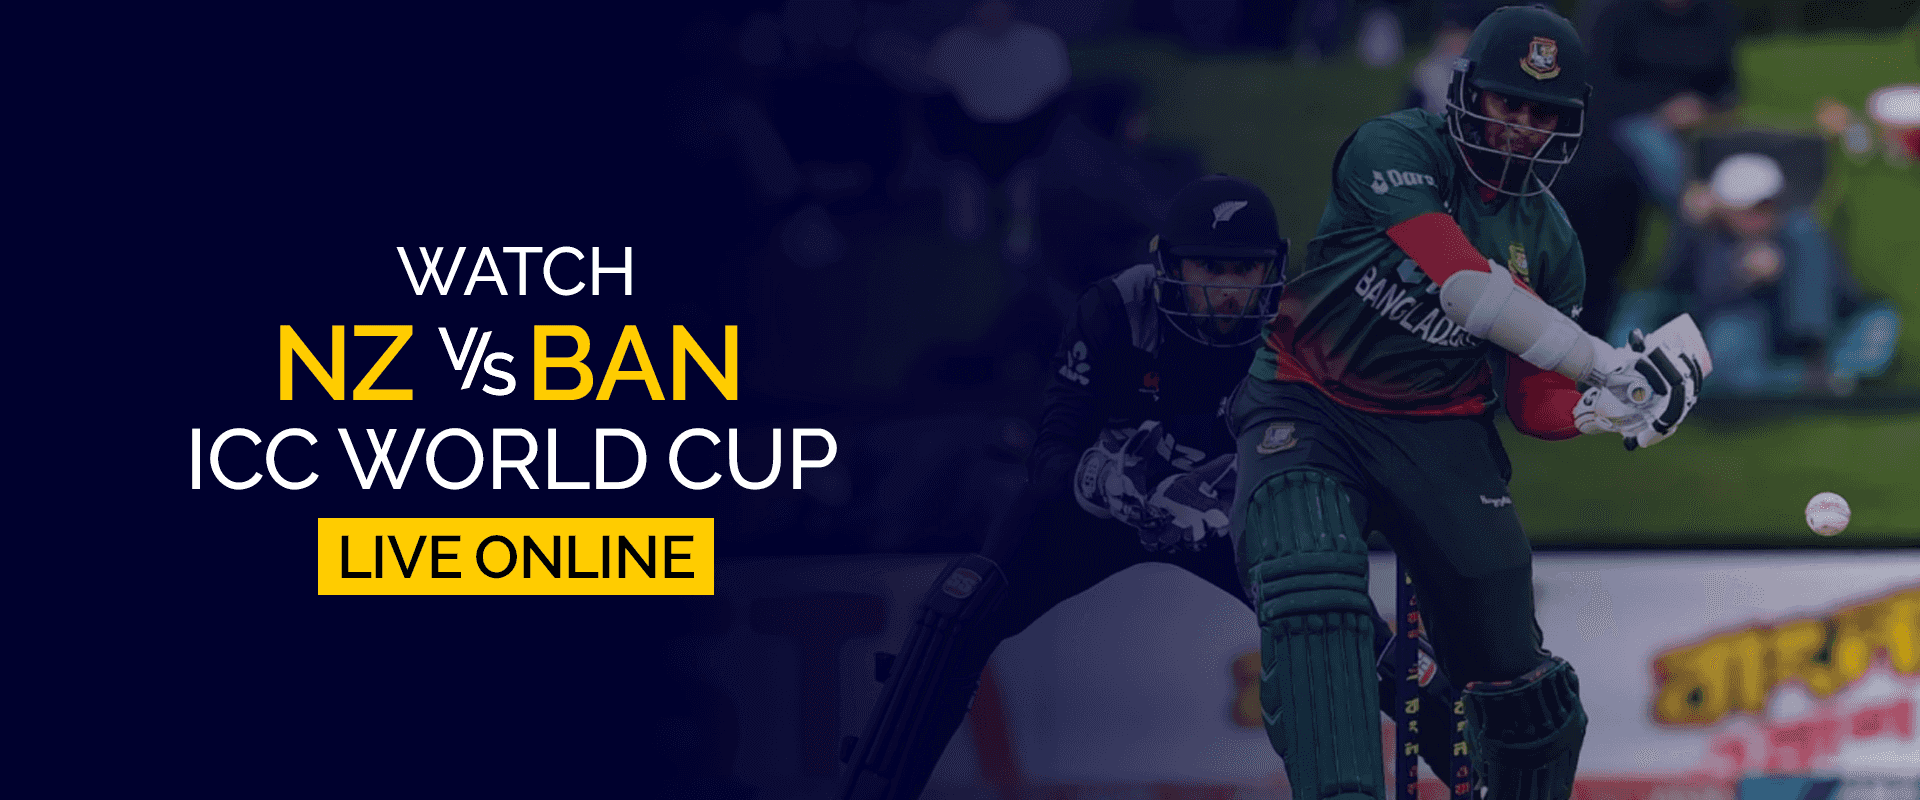 Guarda la Coppa del mondo NZ vs BAN ICC in diretta online